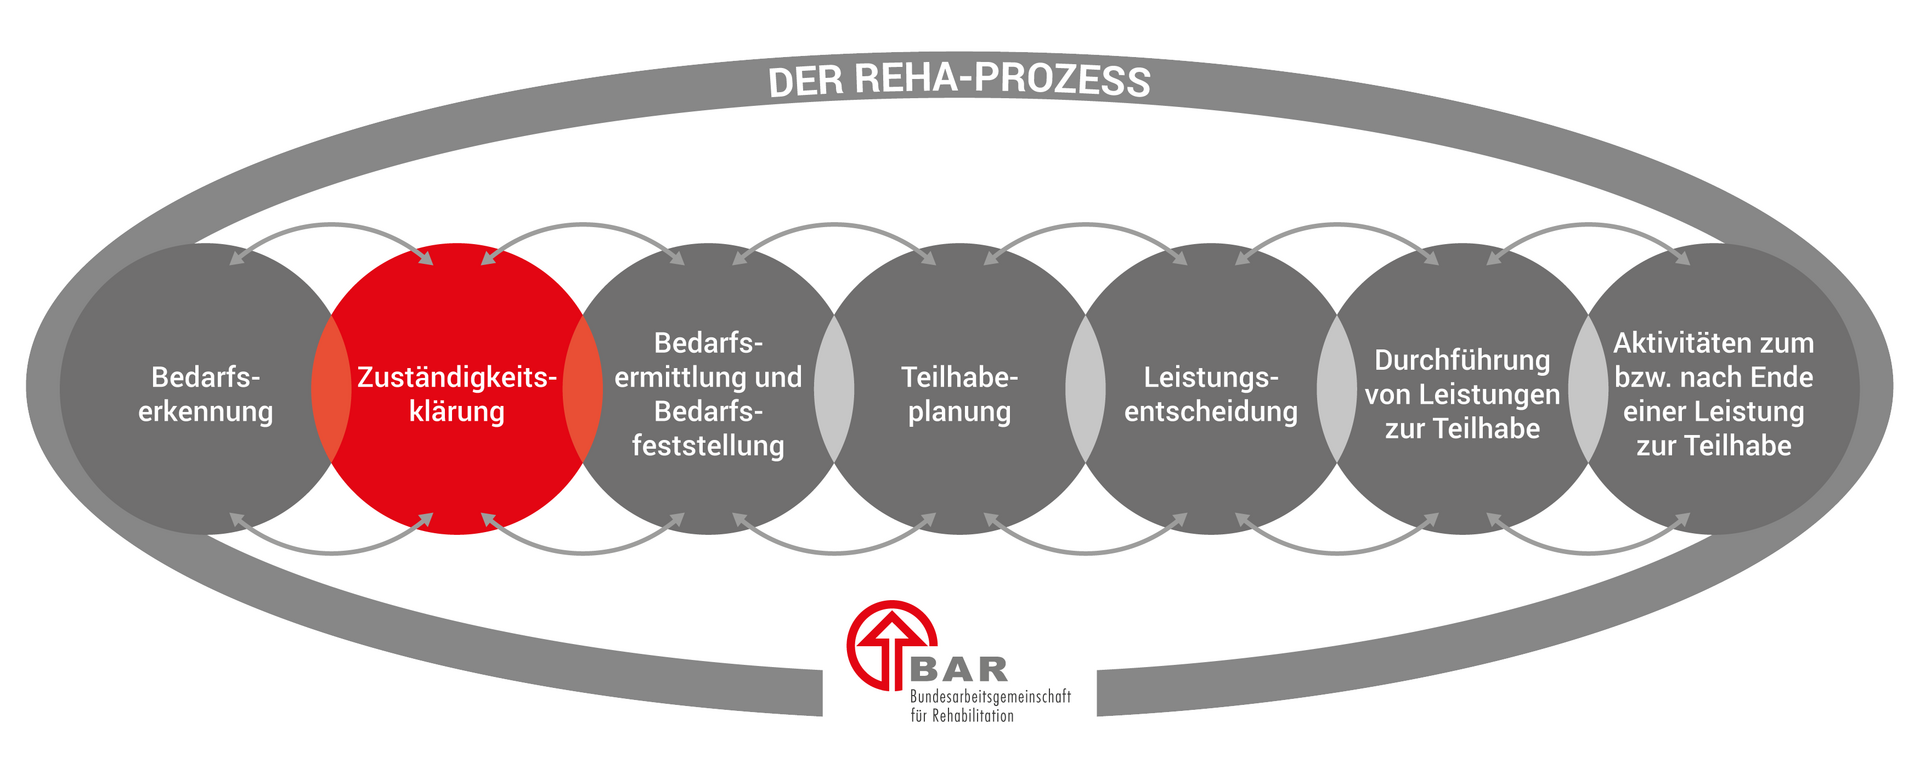 Die sieben Phasen des Reha-Prozesses, dargestellt in sich überlappenden Kreisen: Bedarfserkennung, Zuständigkeitsklärung, Bedarfsermittlung und Bedarfsfeststellung, Teilhabeplanung, Leistungsentscheidung, Durchführung von Leistungen zur Teilhabe und Aktivitäten zum bzw. nach Ende einer Leistung. Hervorgehoben ist die Phase der Zuständigkeitsklärung. Die Überschrift lautet „Der Reha-Prozess“ und unten befindet sich das Logo der BAR.